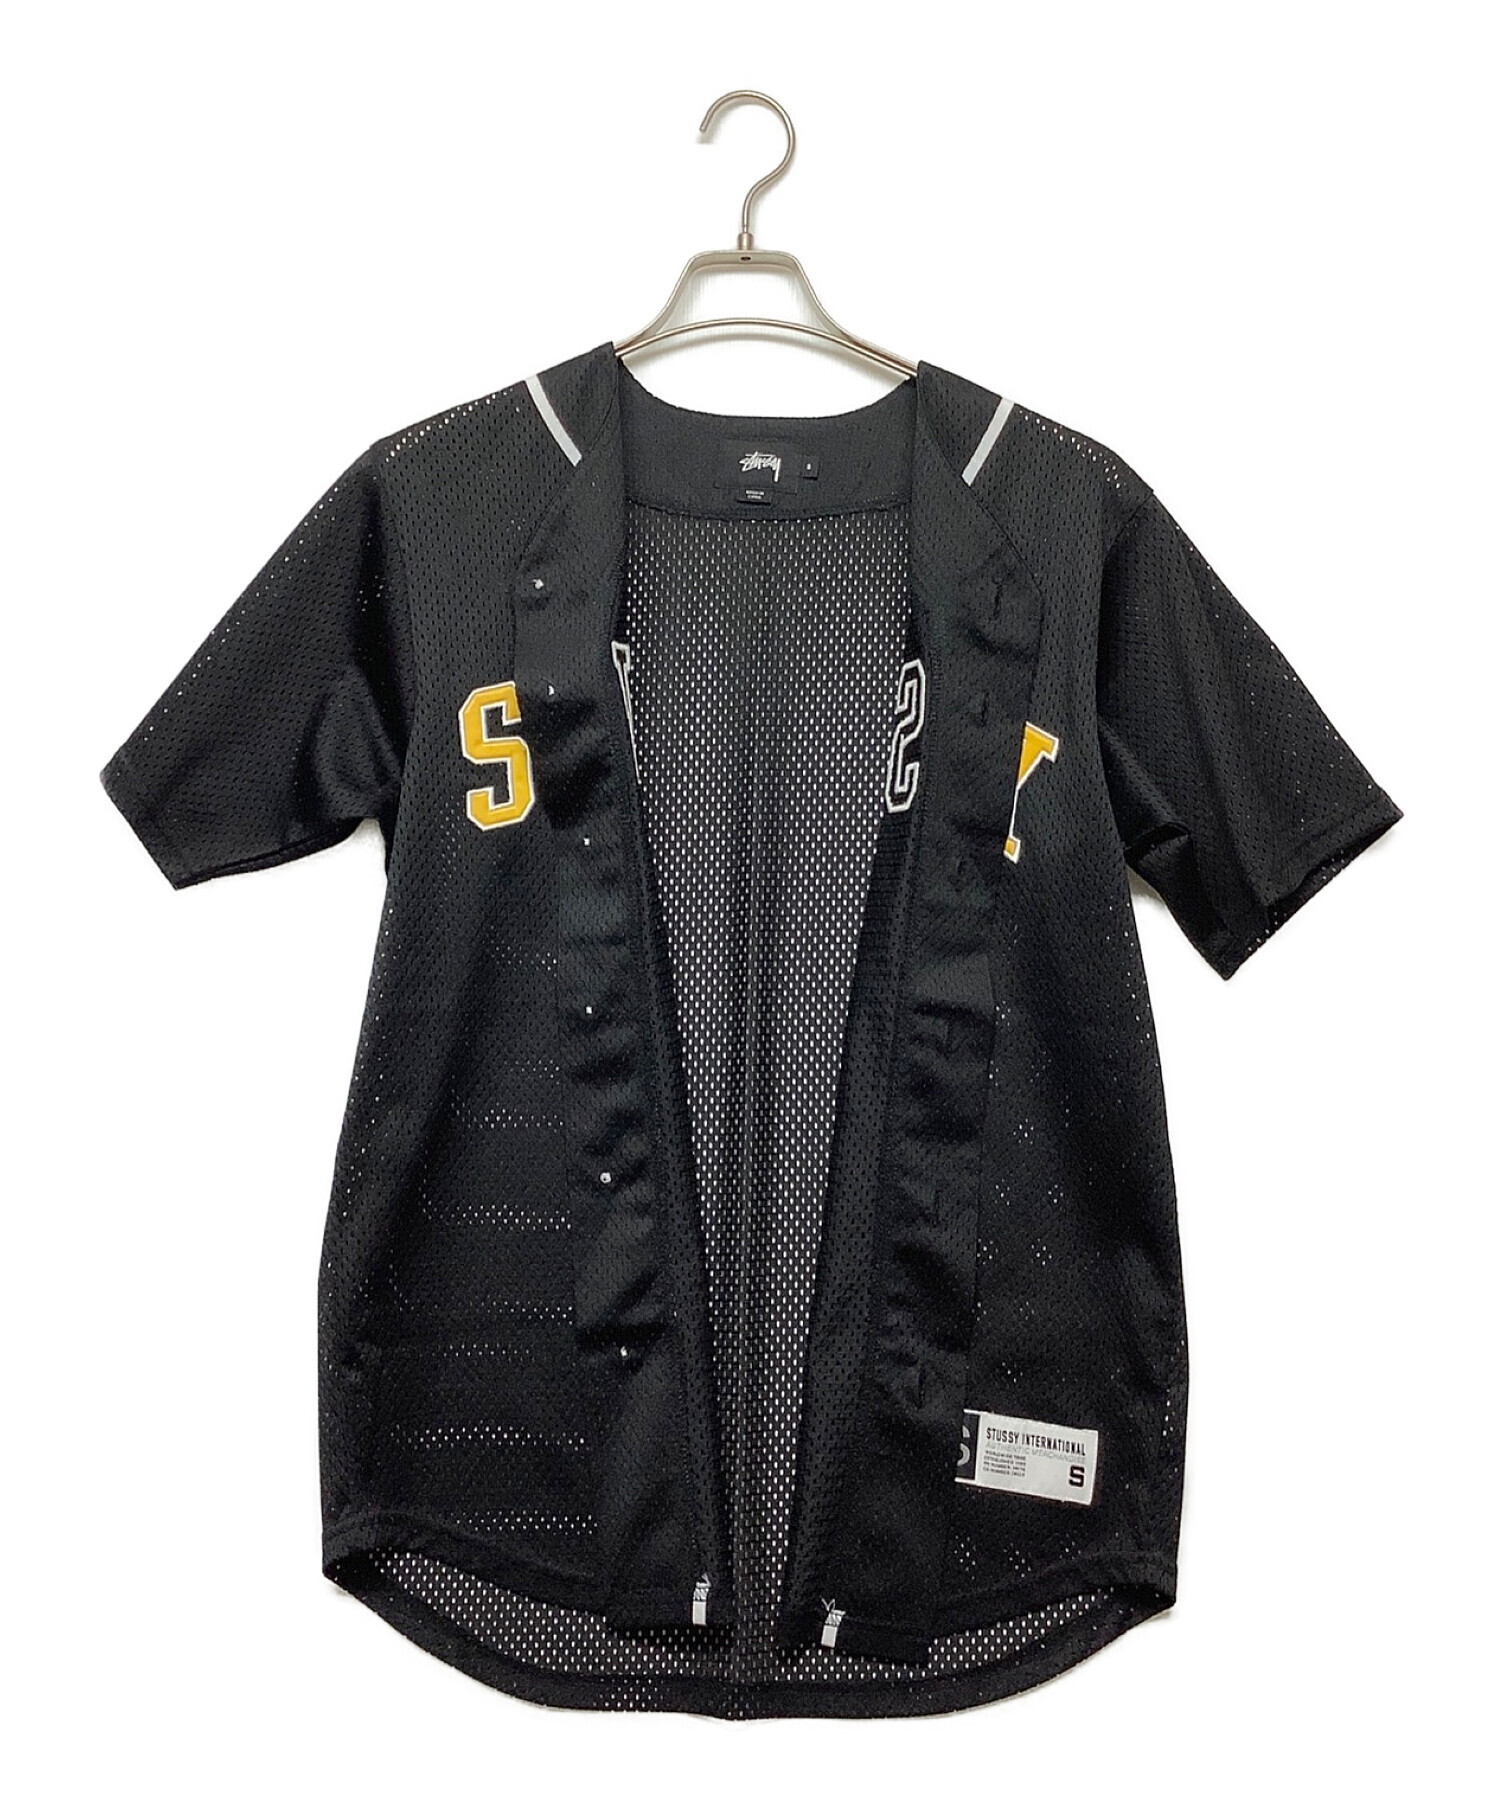 stussy (ステューシー) メッシュベースボールシャツ ブラック×イエロー サイズ:S